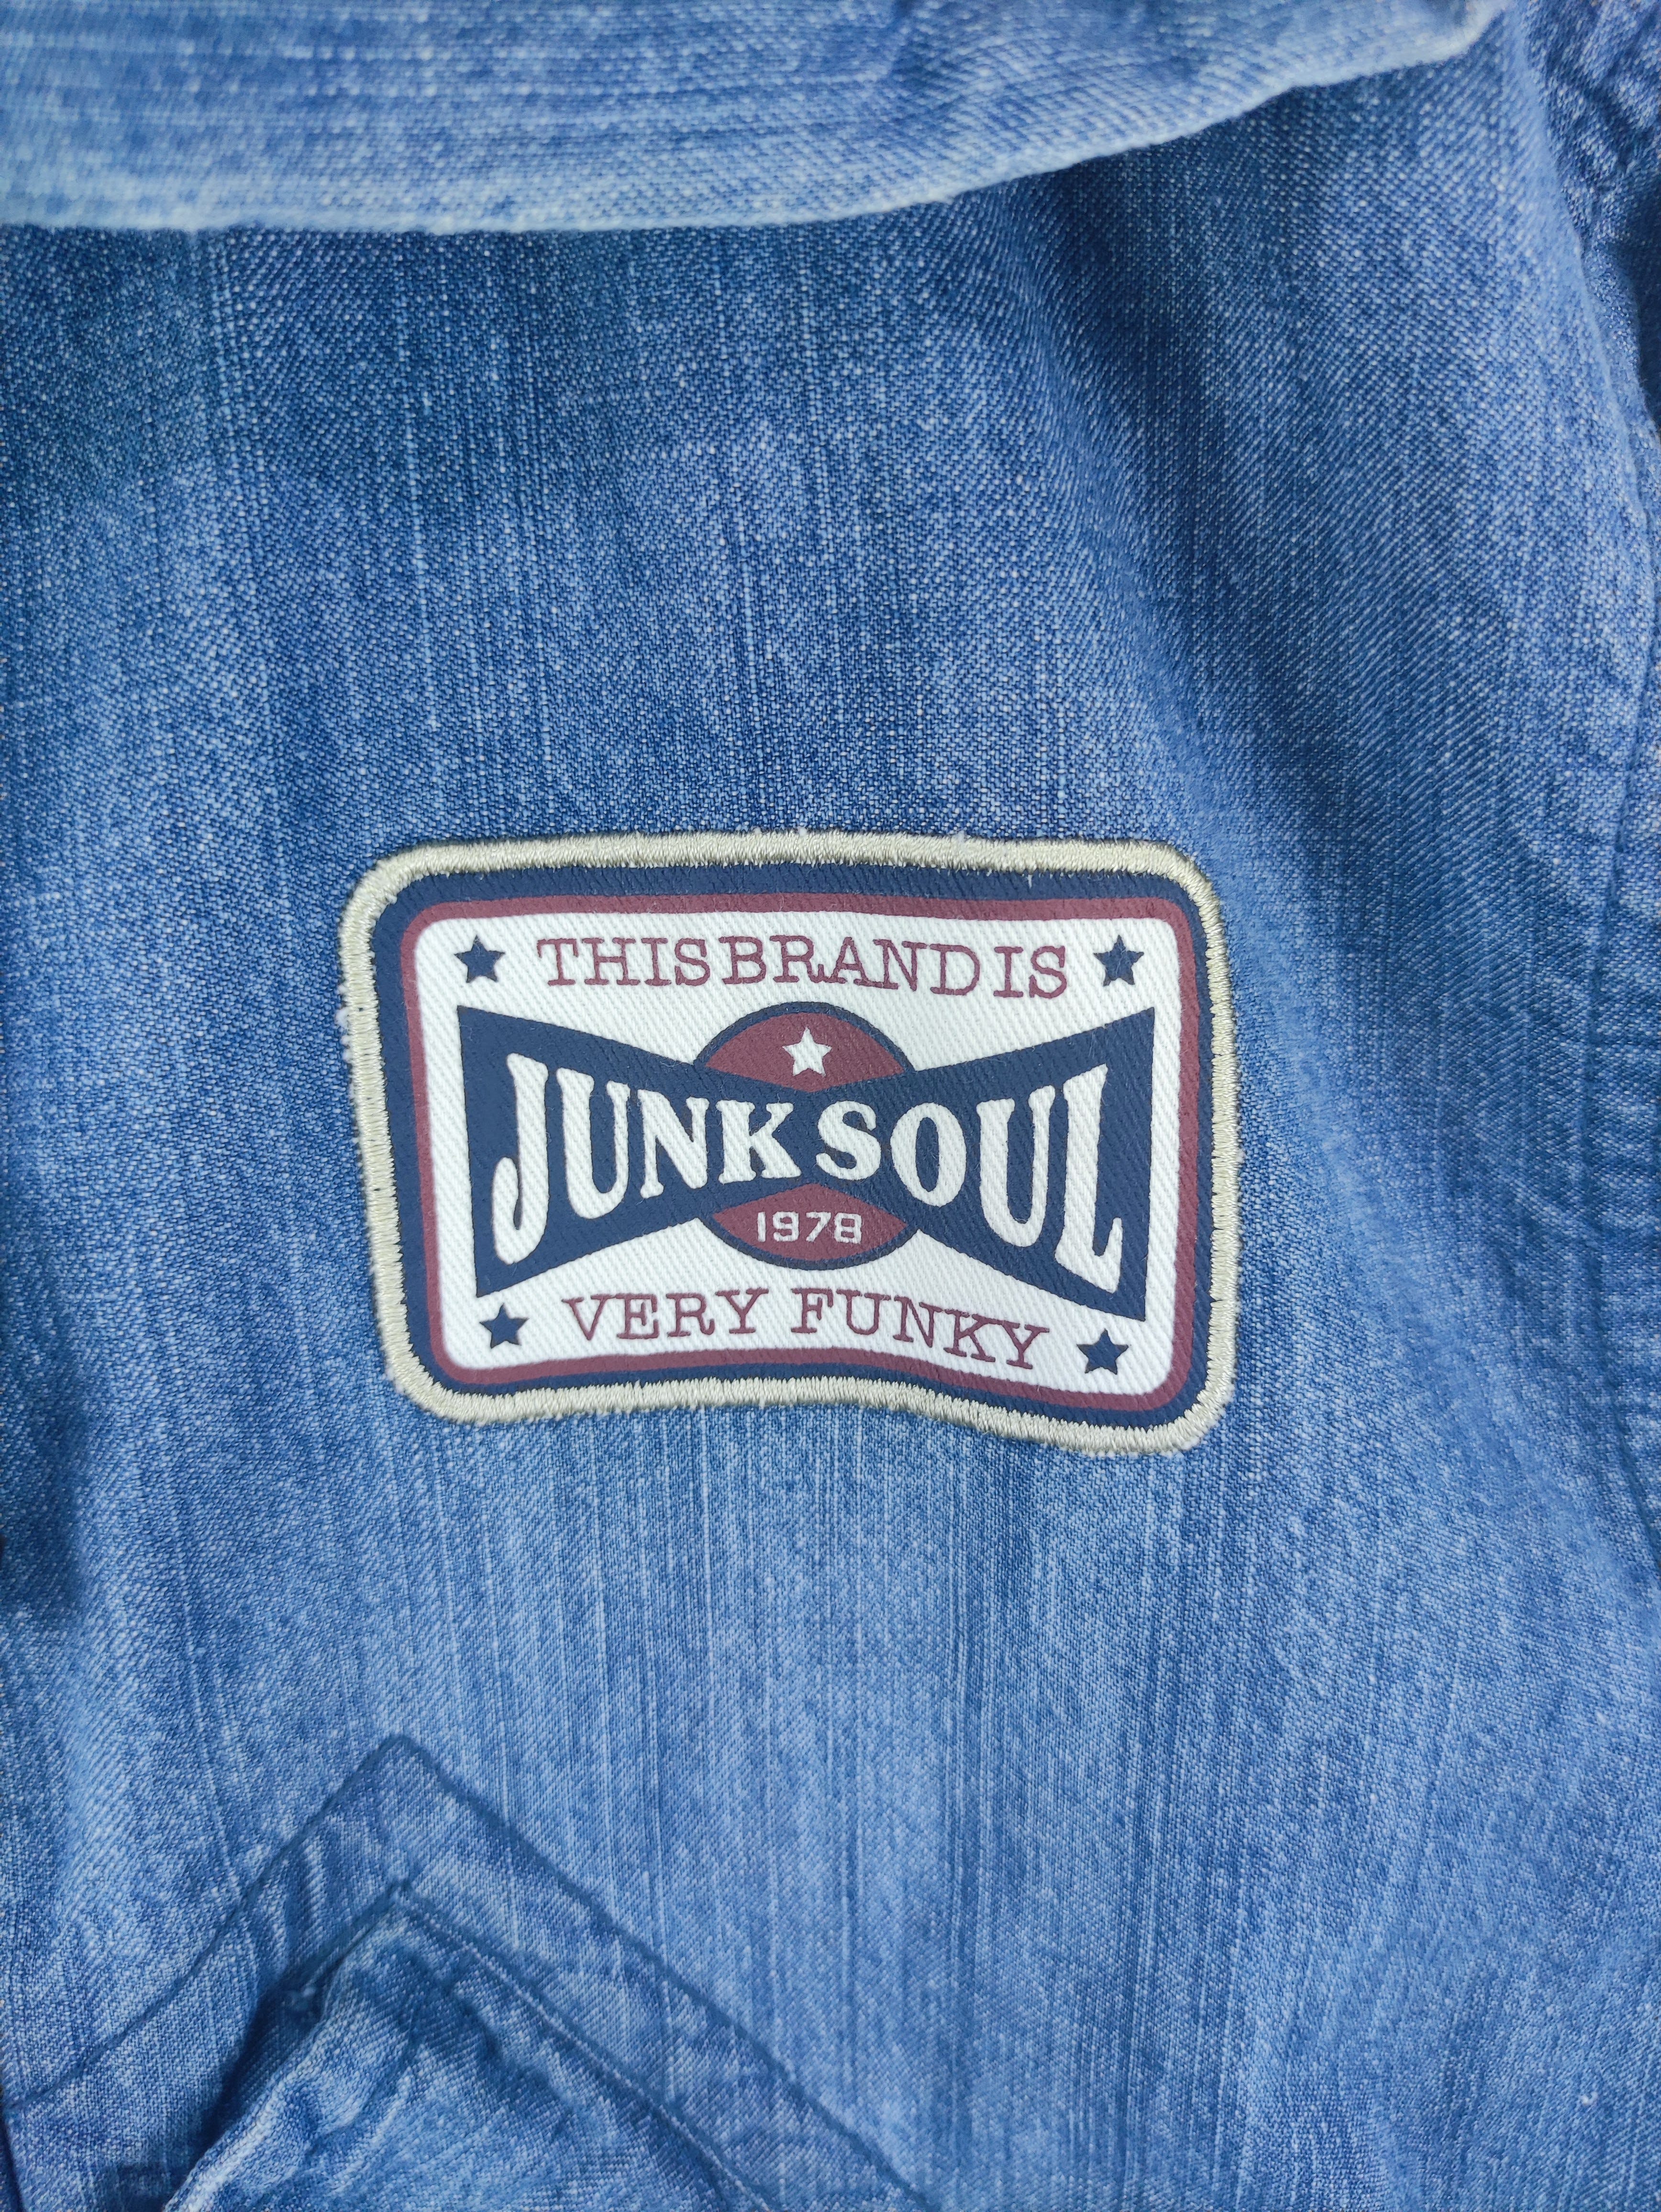 Vintage Junk Soul Jacket Hoodie Zipper - 2